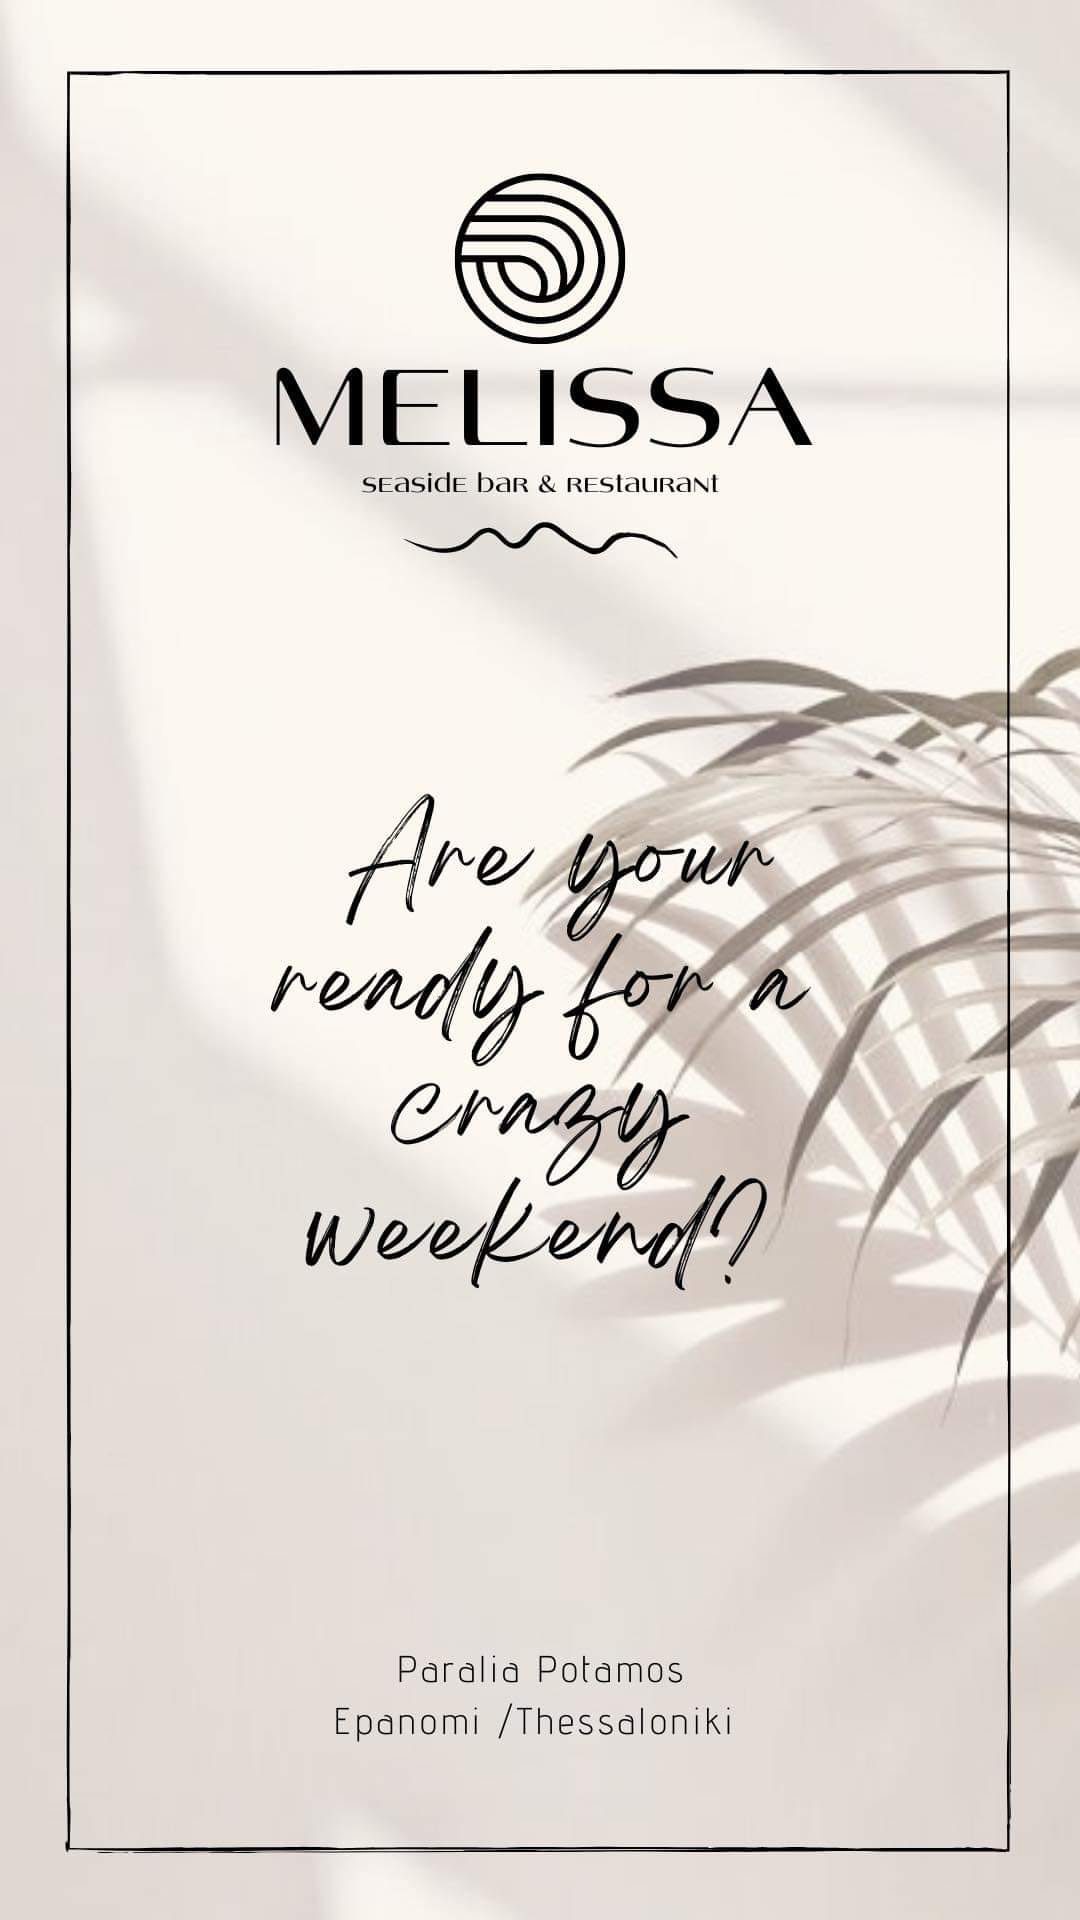 Είστε έτοιμοι για ένα τρελό Σαββατοκύριακο στη MELISSA;